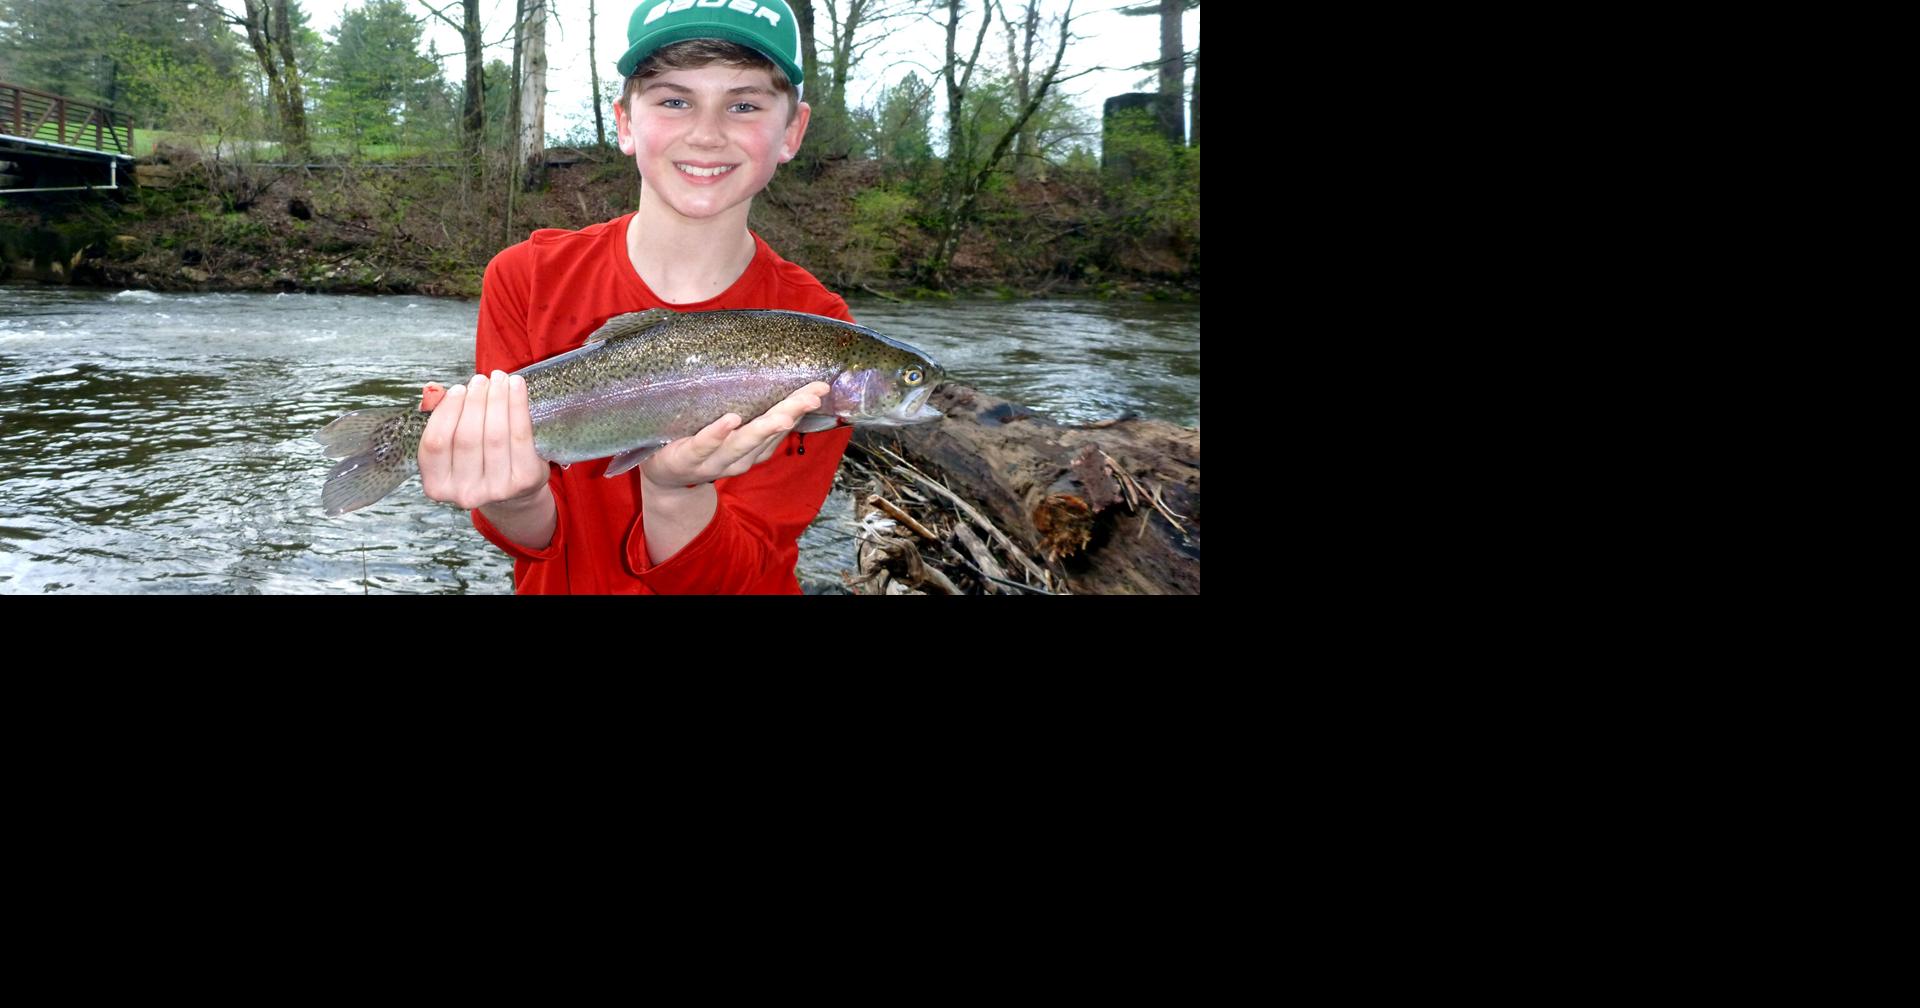 Vermont trout season opens April 9 Outdoors